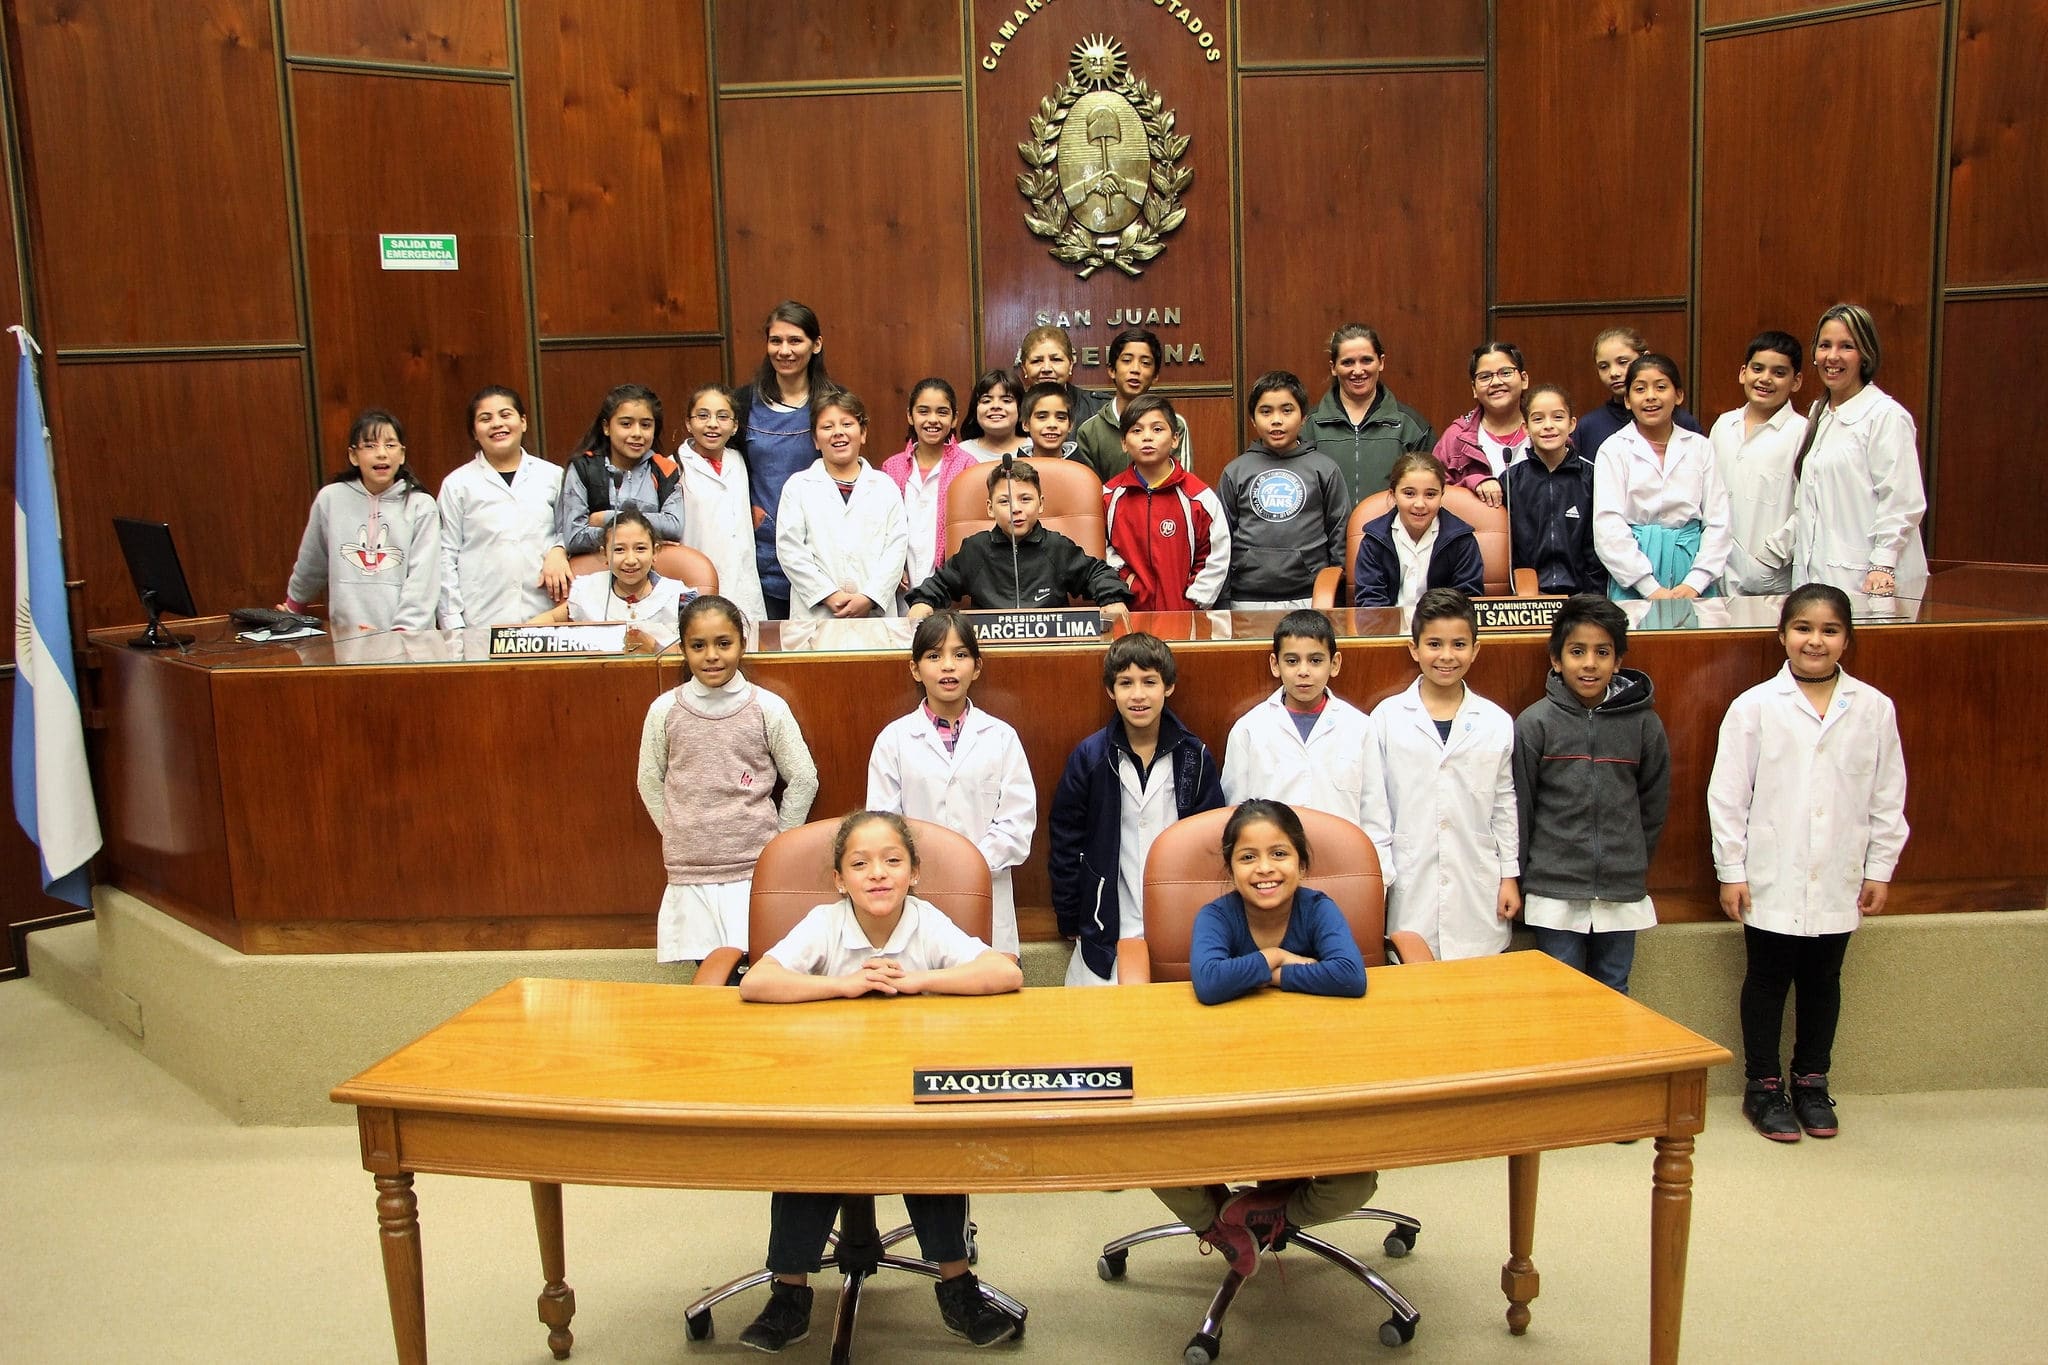 La escuela "Provincia Santiago del Estero" visitó la Cámara de Diputados.